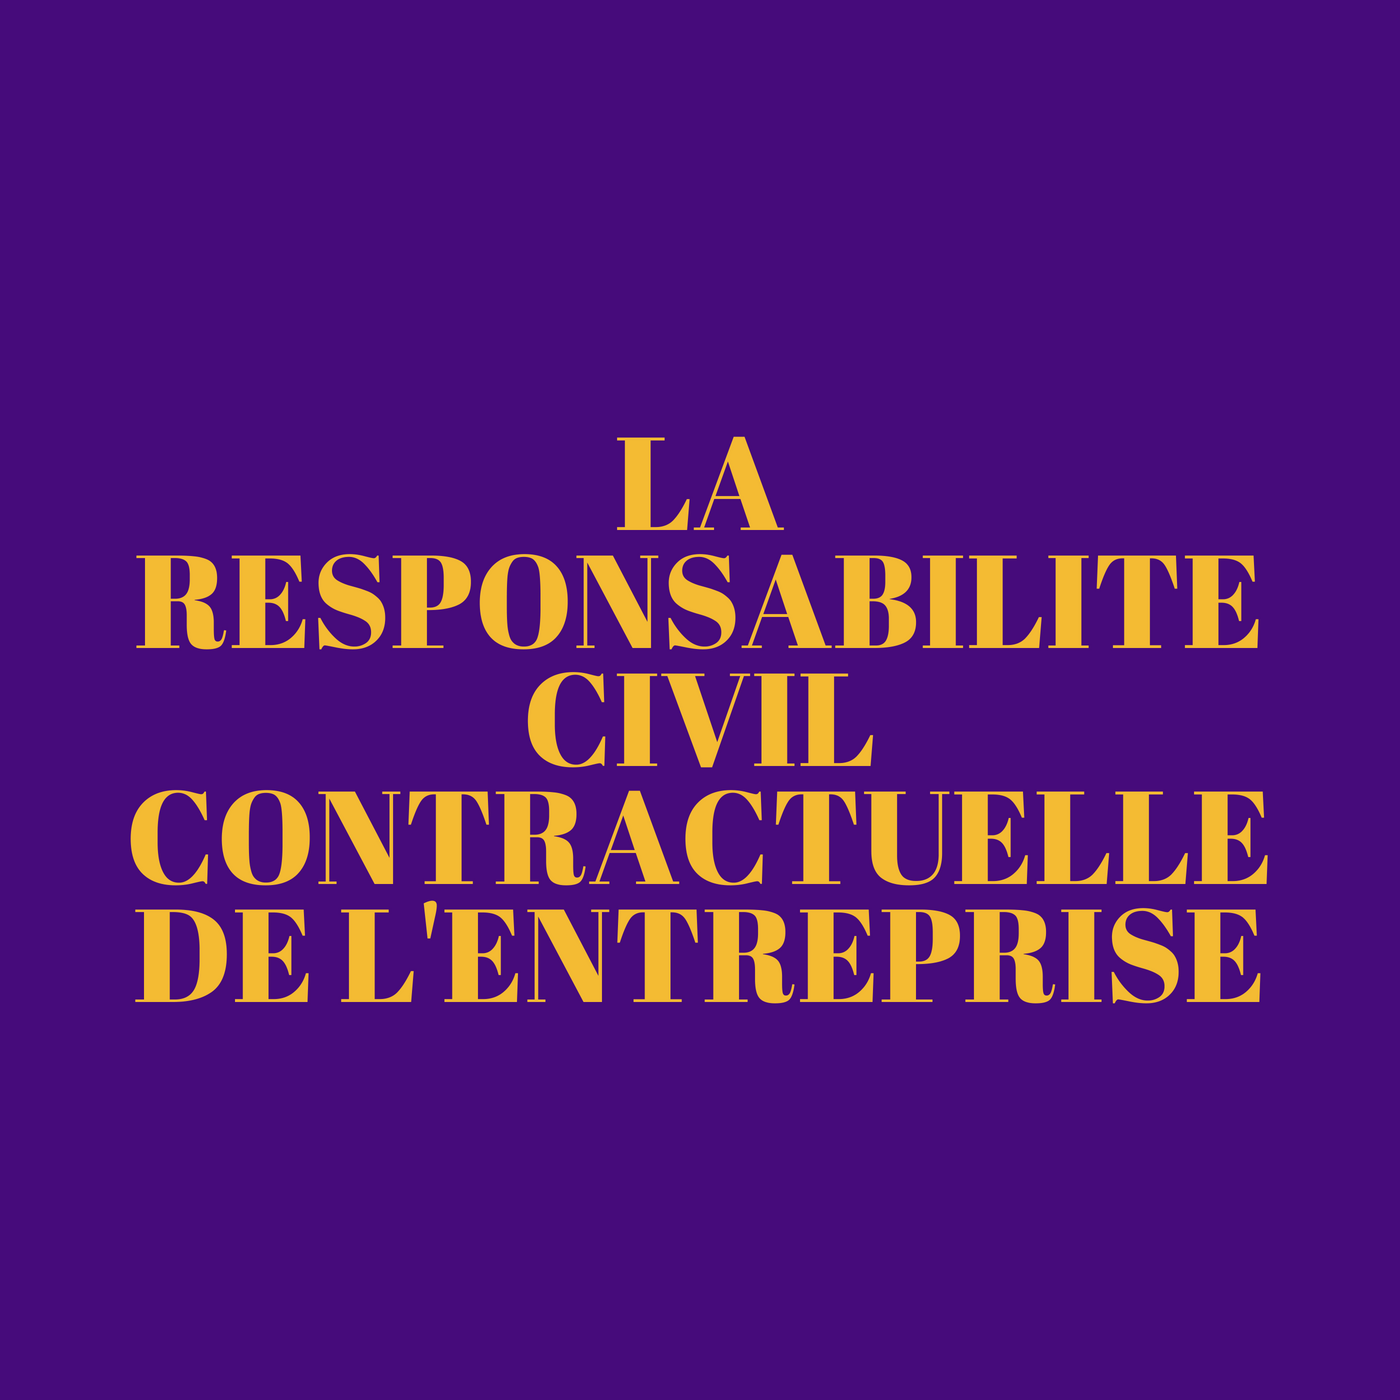 La responsabilité civile contractuelle de l’entreprise